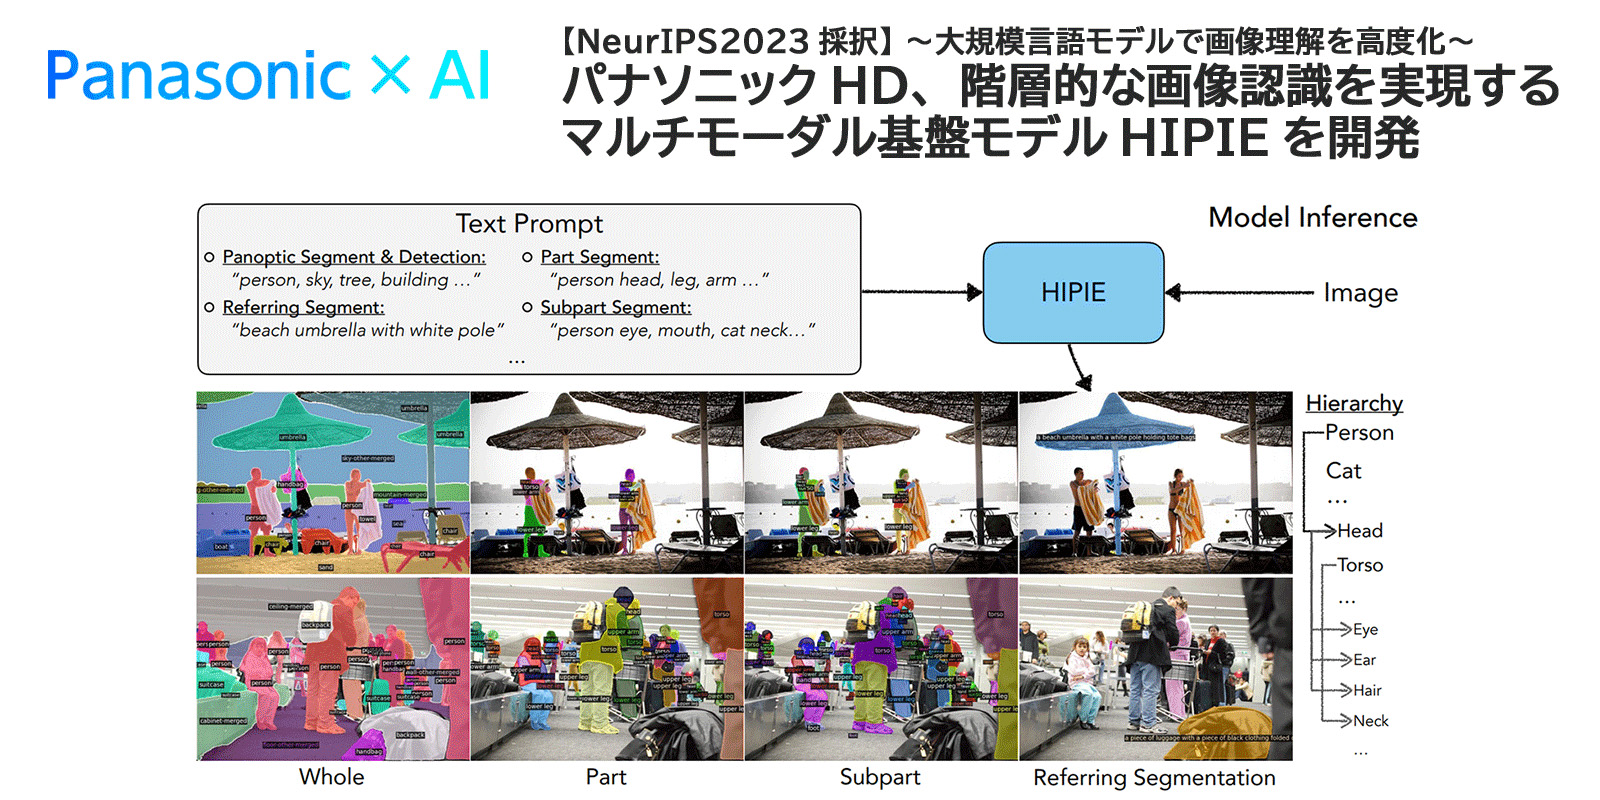 画像：【NeurIPS 2023採択】～大規模言語モデルで画像理解を高度化～パナソニックHD、階層的な画像認識を実現するマルチモーダル基盤HIPIEモデルを開発